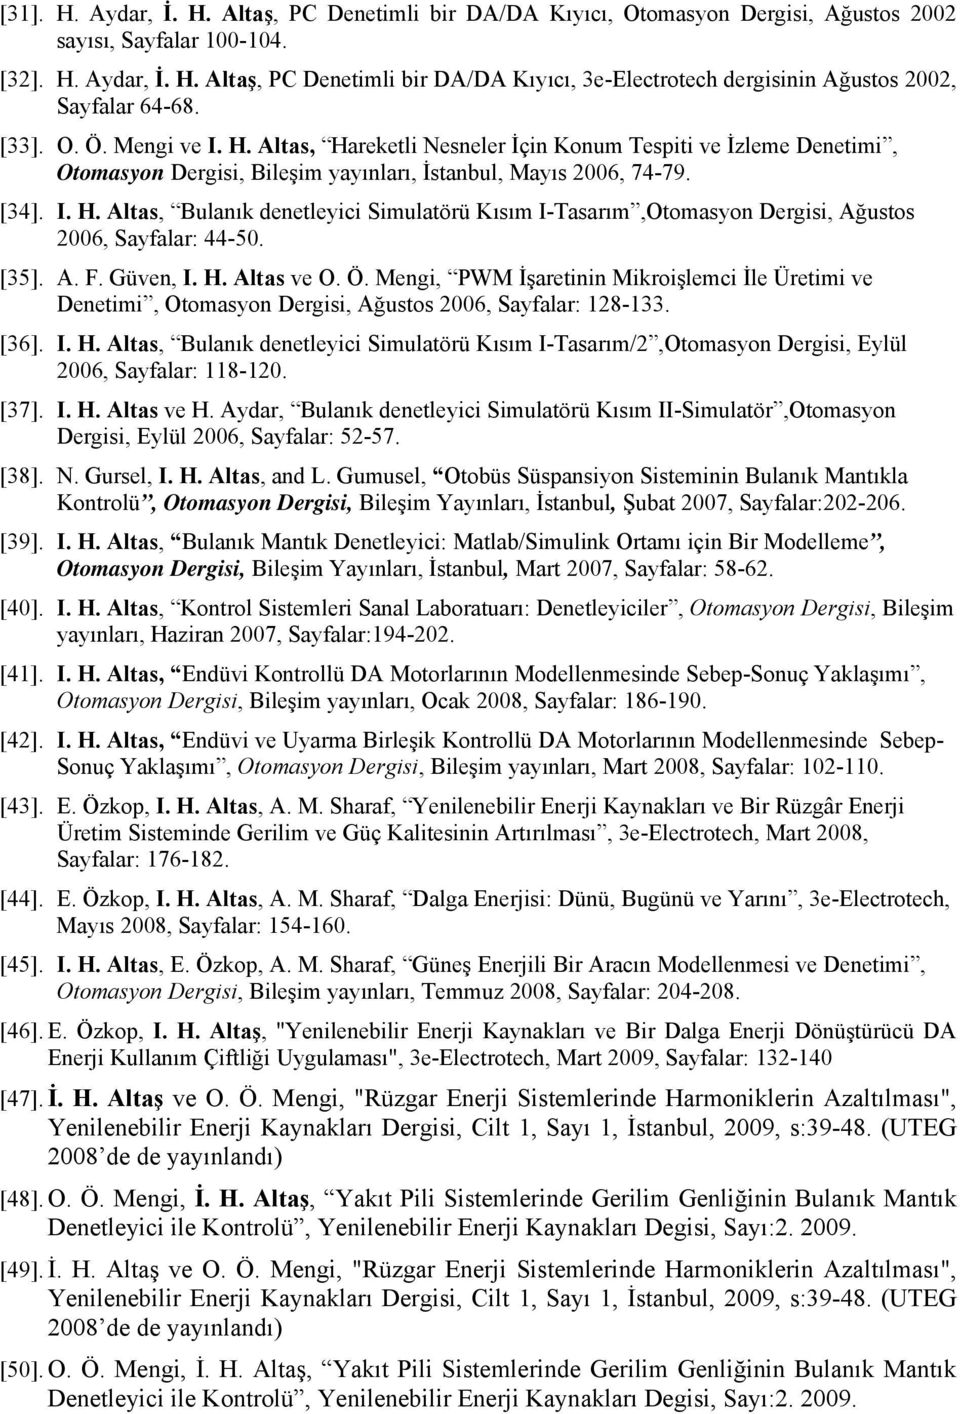 [35]. A. F. Güven, I. H. Altas ve O. Ö. Mengi, PWM İşaretinin Mikroişlemci İle Üretimi ve Denetimi, Otomasyon Dergisi, Ağustos 2006, Sayfalar: 128-133. [36]. I. H. Altas, Bulanık denetleyici Simulatörü Kısım I-Tasarım/2,Otomasyon Dergisi, Eylül 2006, Sayfalar: 118-120.